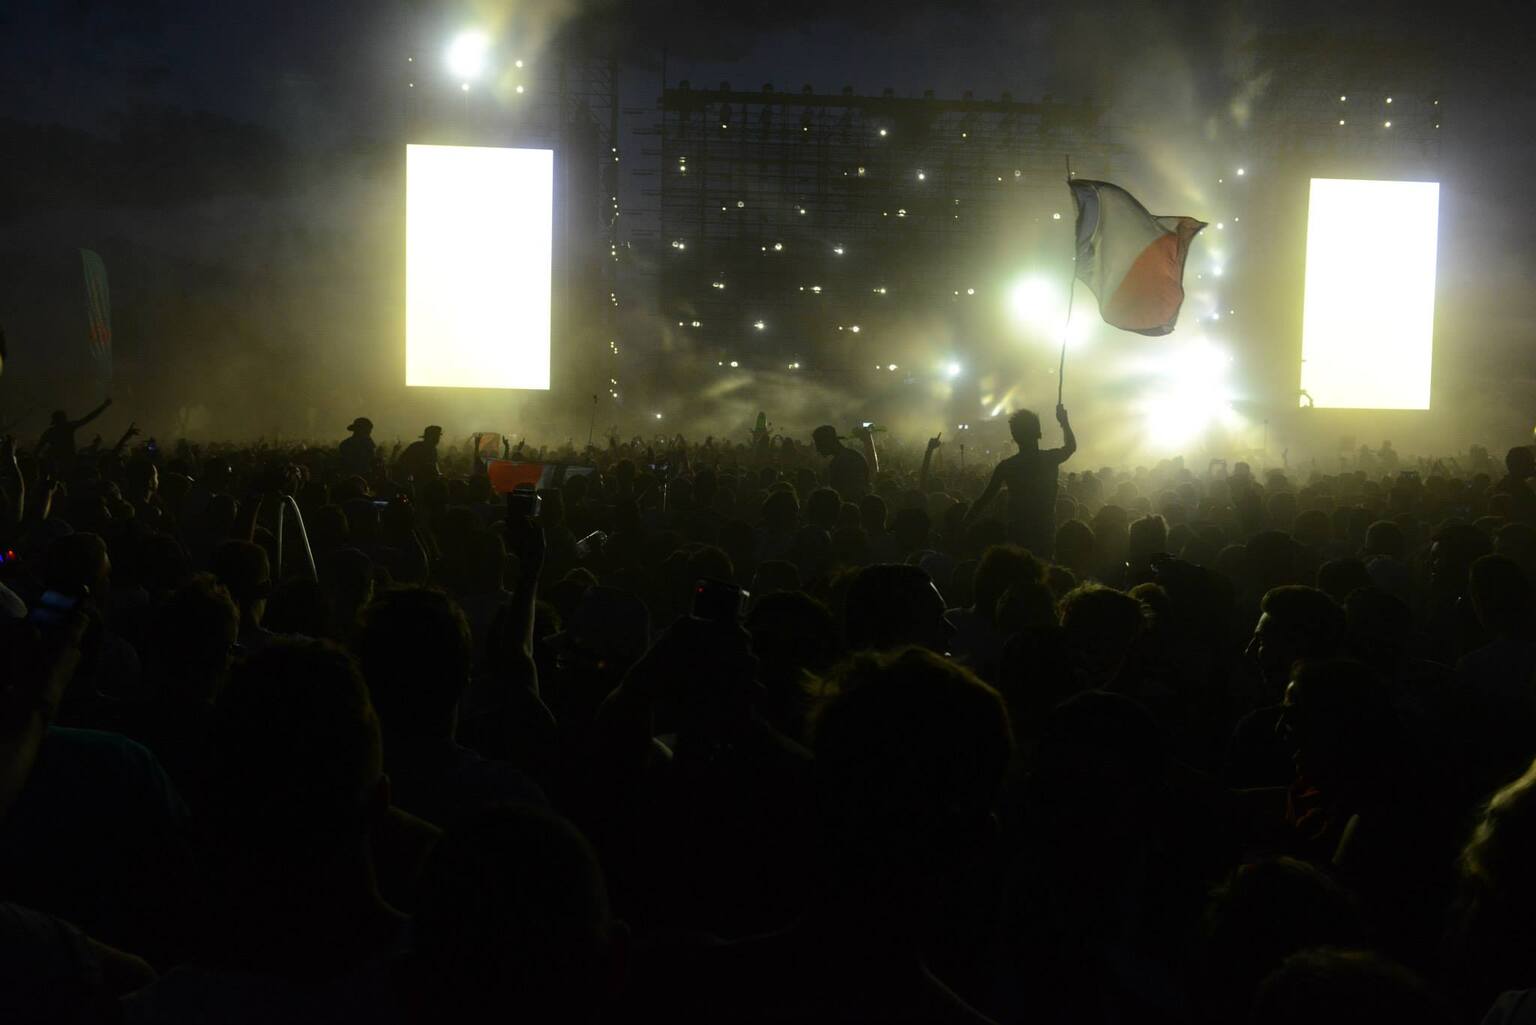 Événement Electrobeach Music Festival 2015 au Port-Barcarès en partenariat avec Trance In France, avec la participation d’Armin van Buuren parmi les artistes invités.